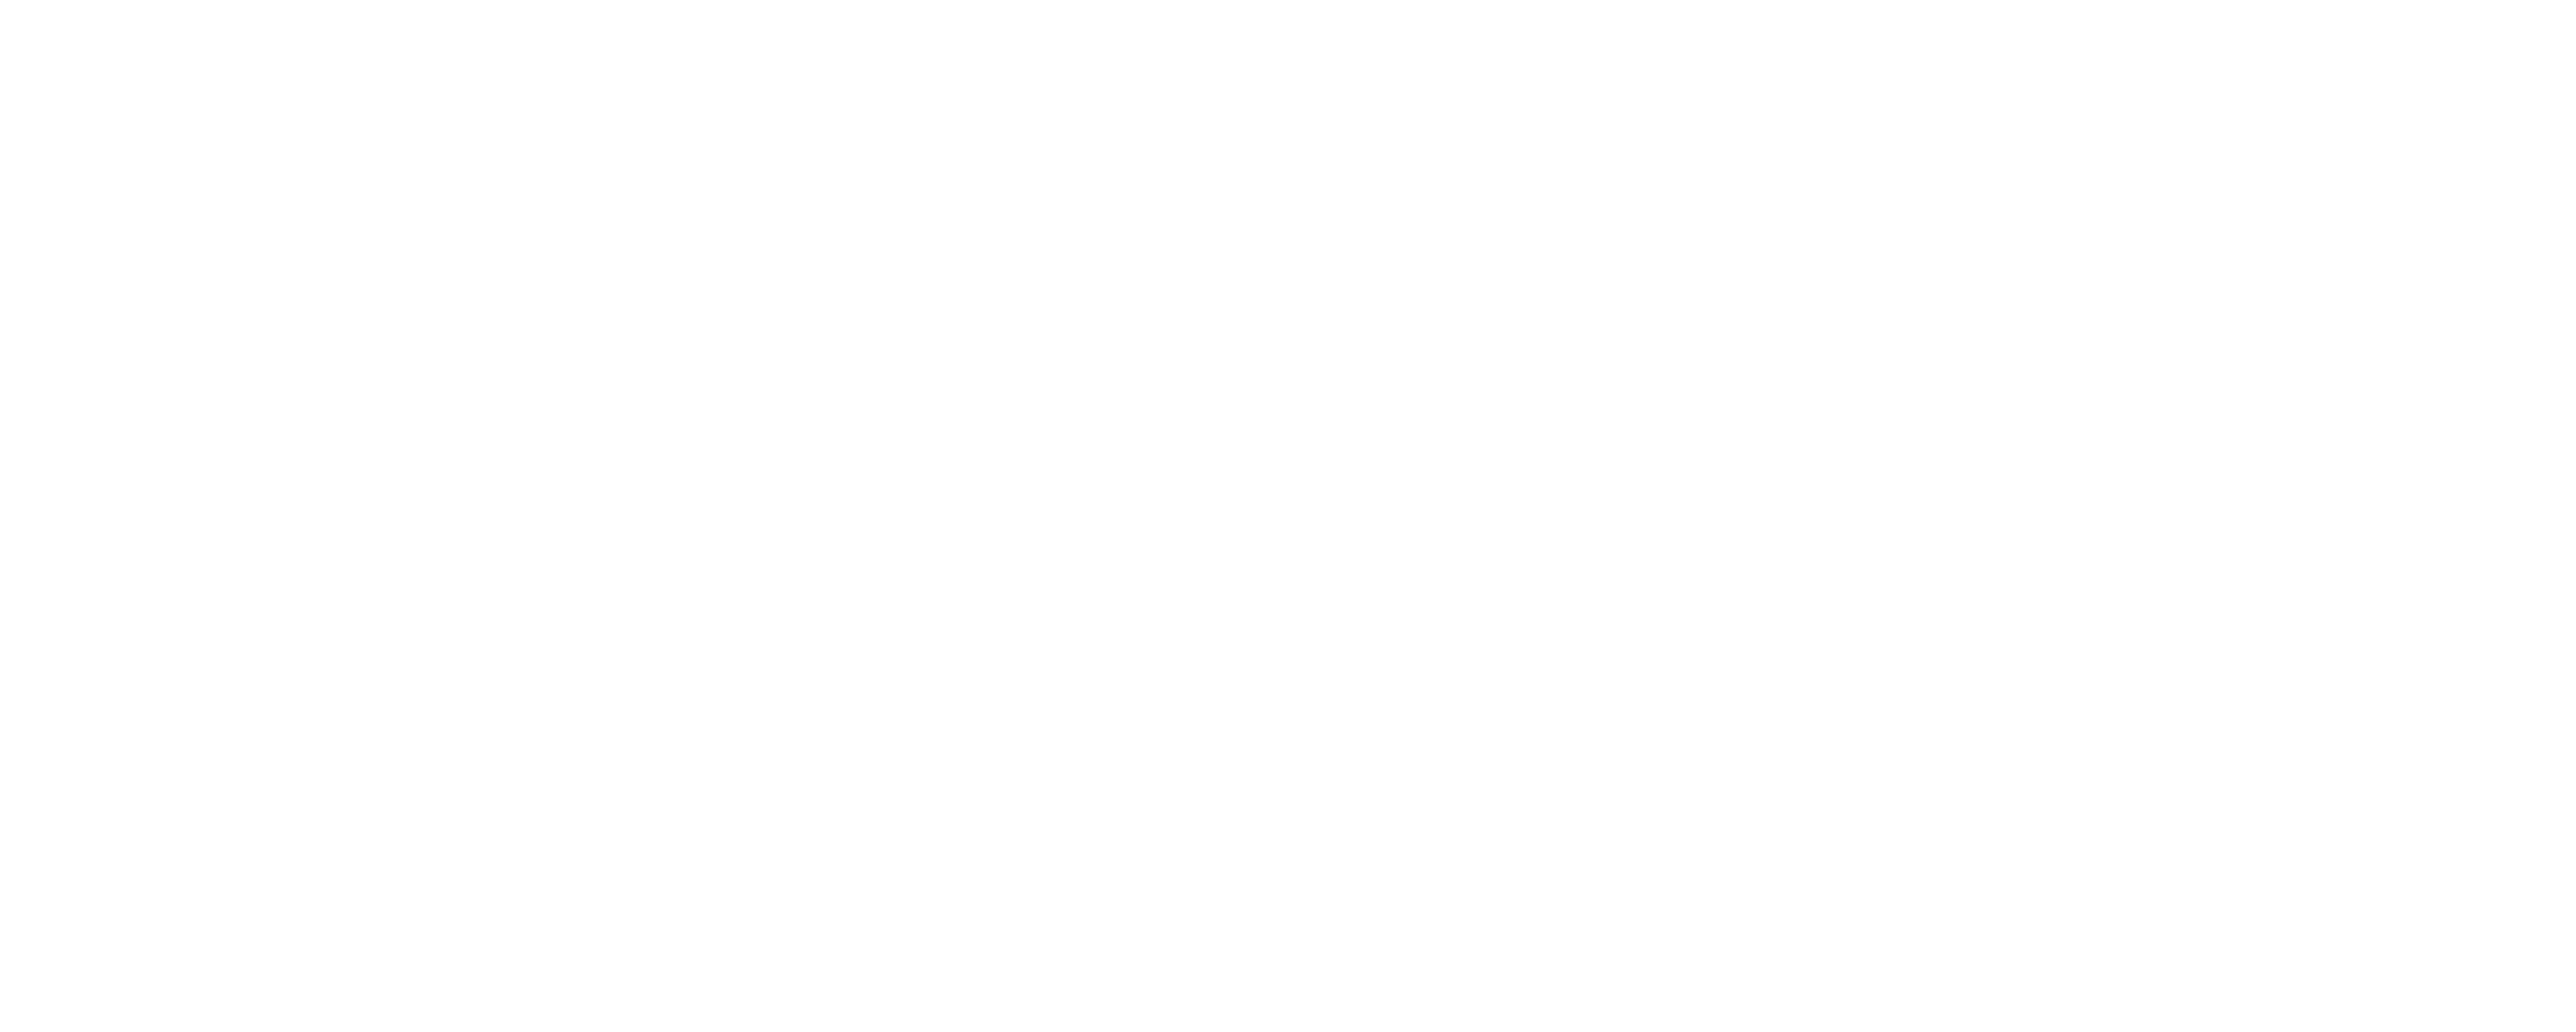 Pfadi Meggen Logo